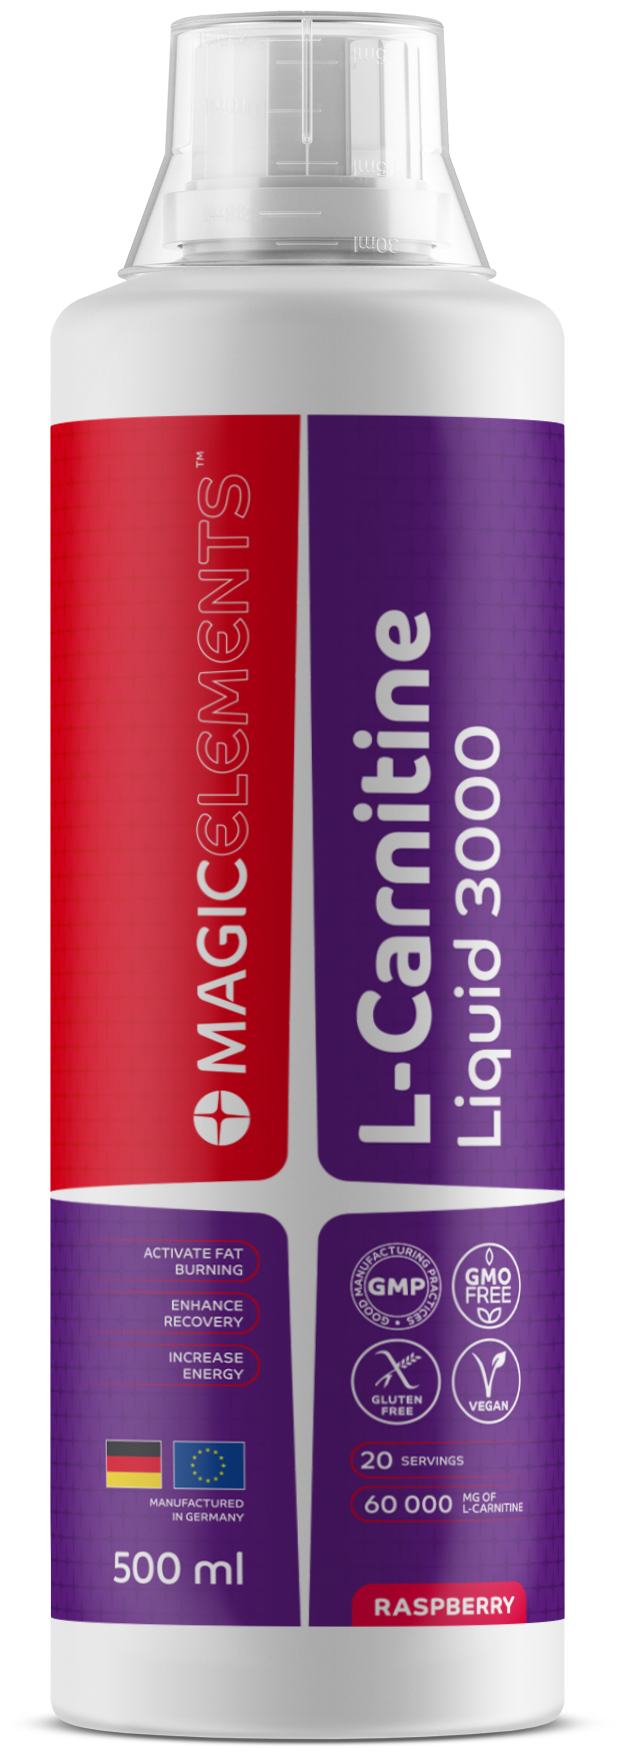 Л-Карнитин жидкий (концентрат) Magic Elements L-Carnitine Liquid 3000 малина 500 мл. 500 мл.